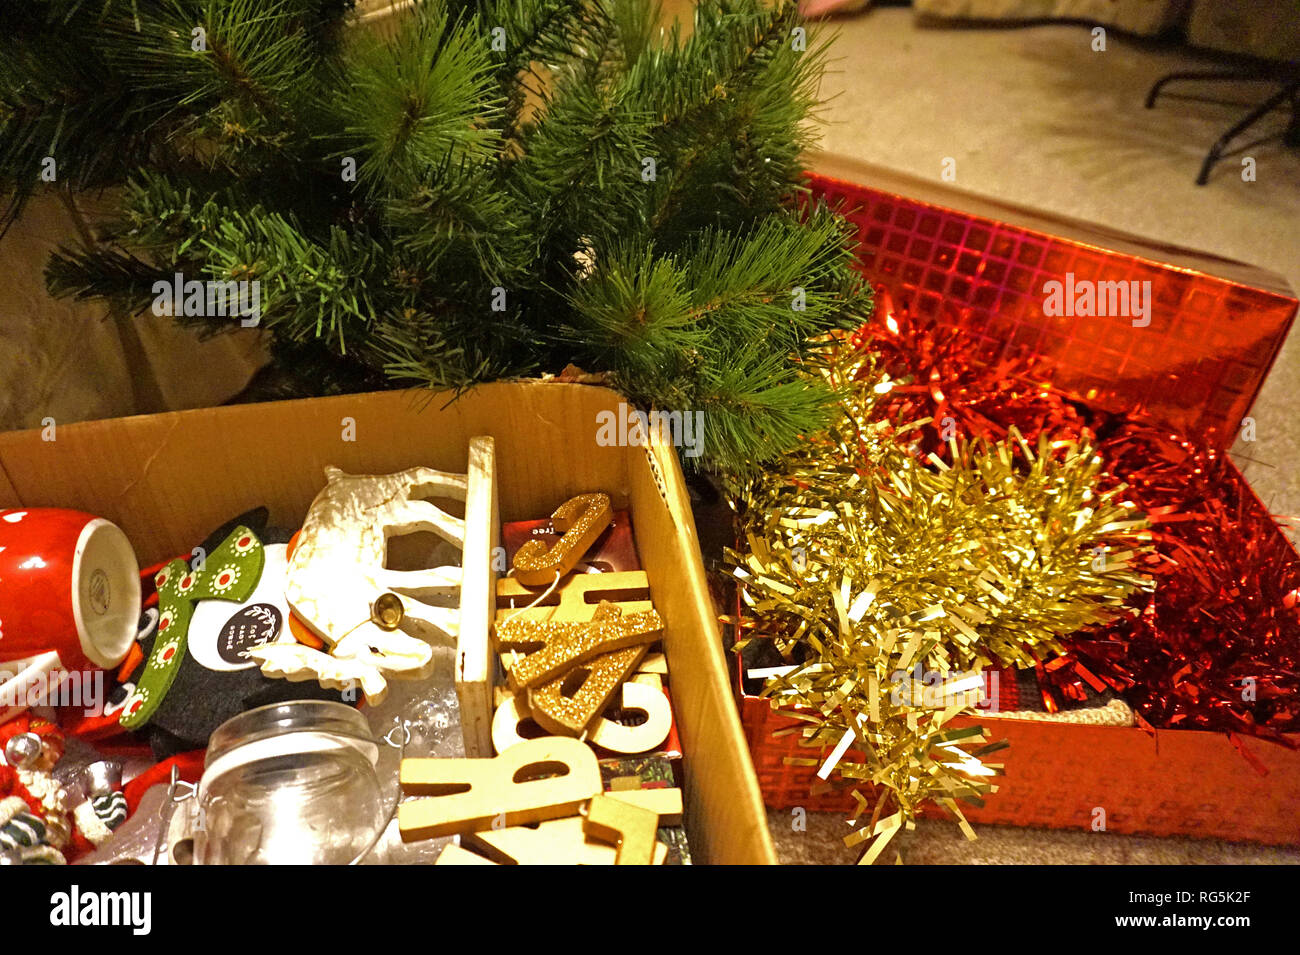 Décorations de Noël en boîtes prêtes à mettre out / mettre à l'écart dans le loft Banque D'Images